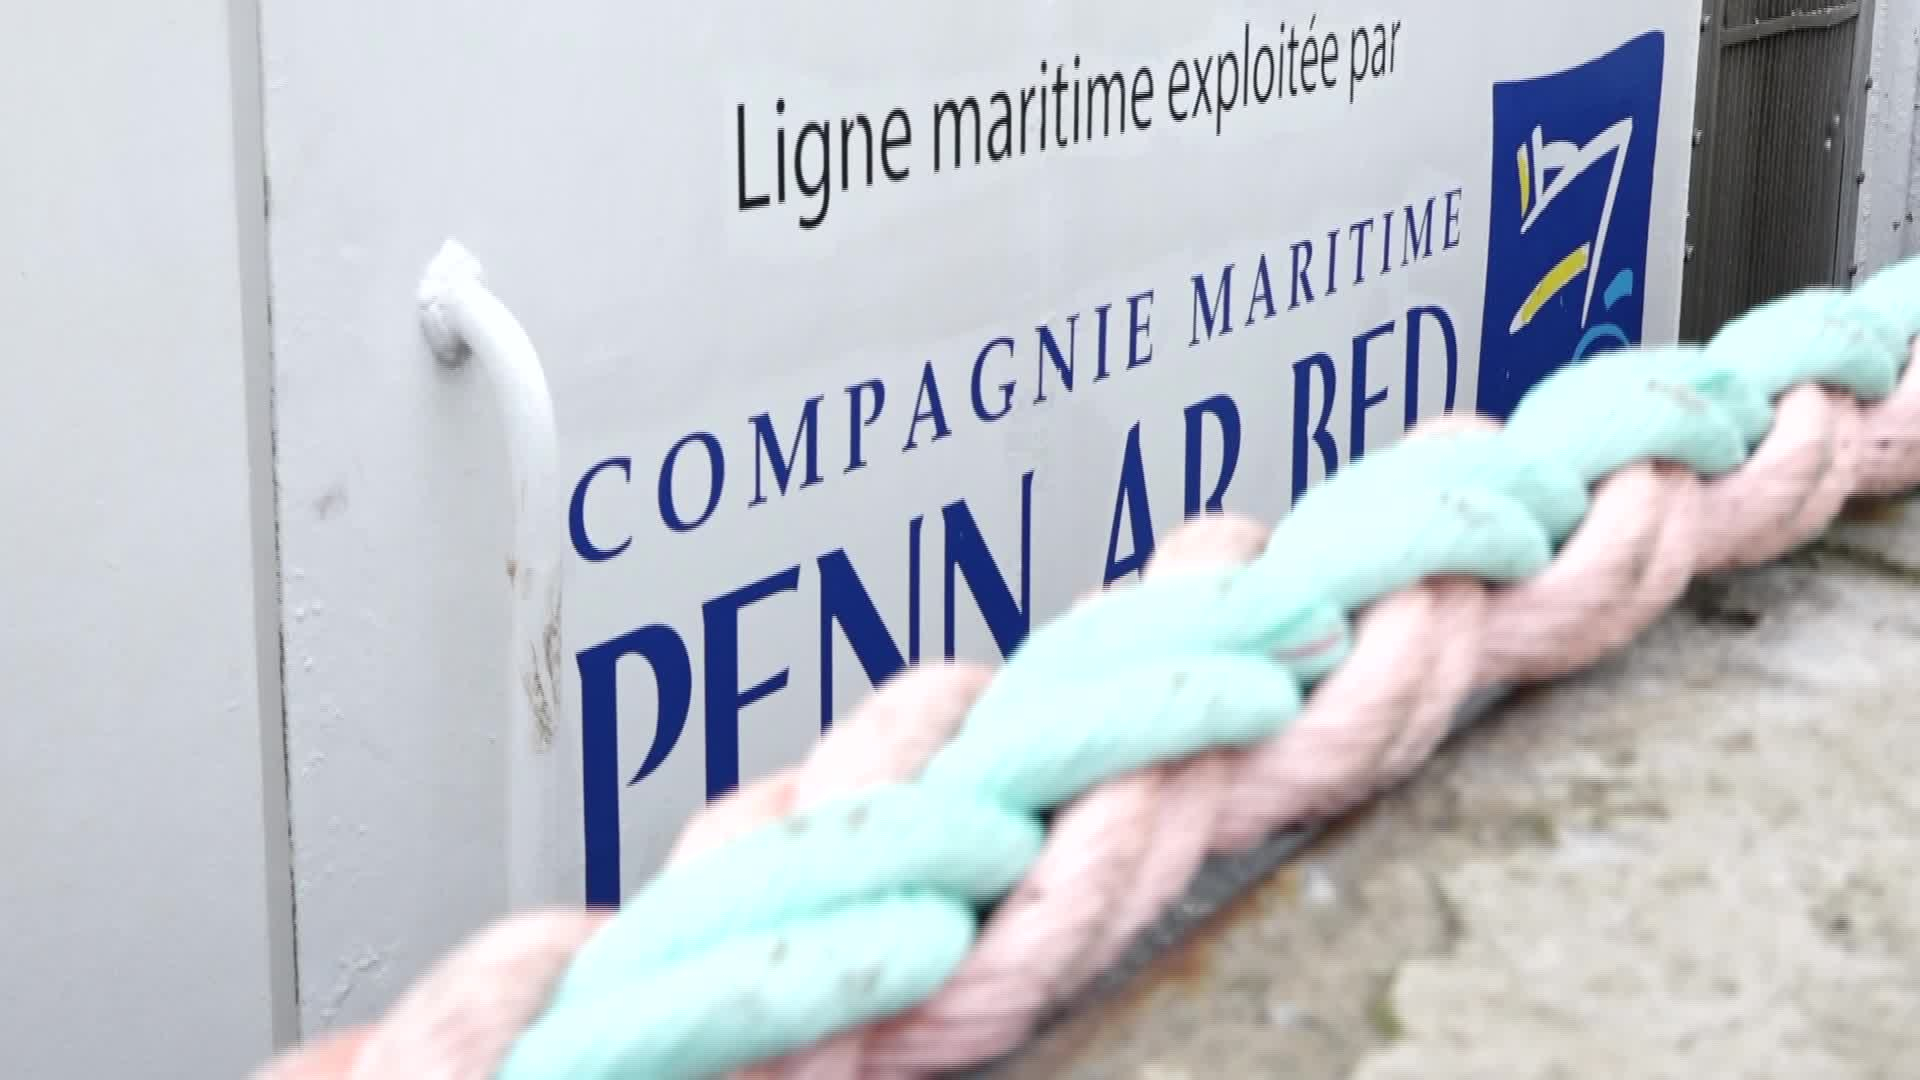 La Penn Ar Bed réduit la vitesse des bateaux pour moins consommer de gazole (Tébéo-TébéSud)